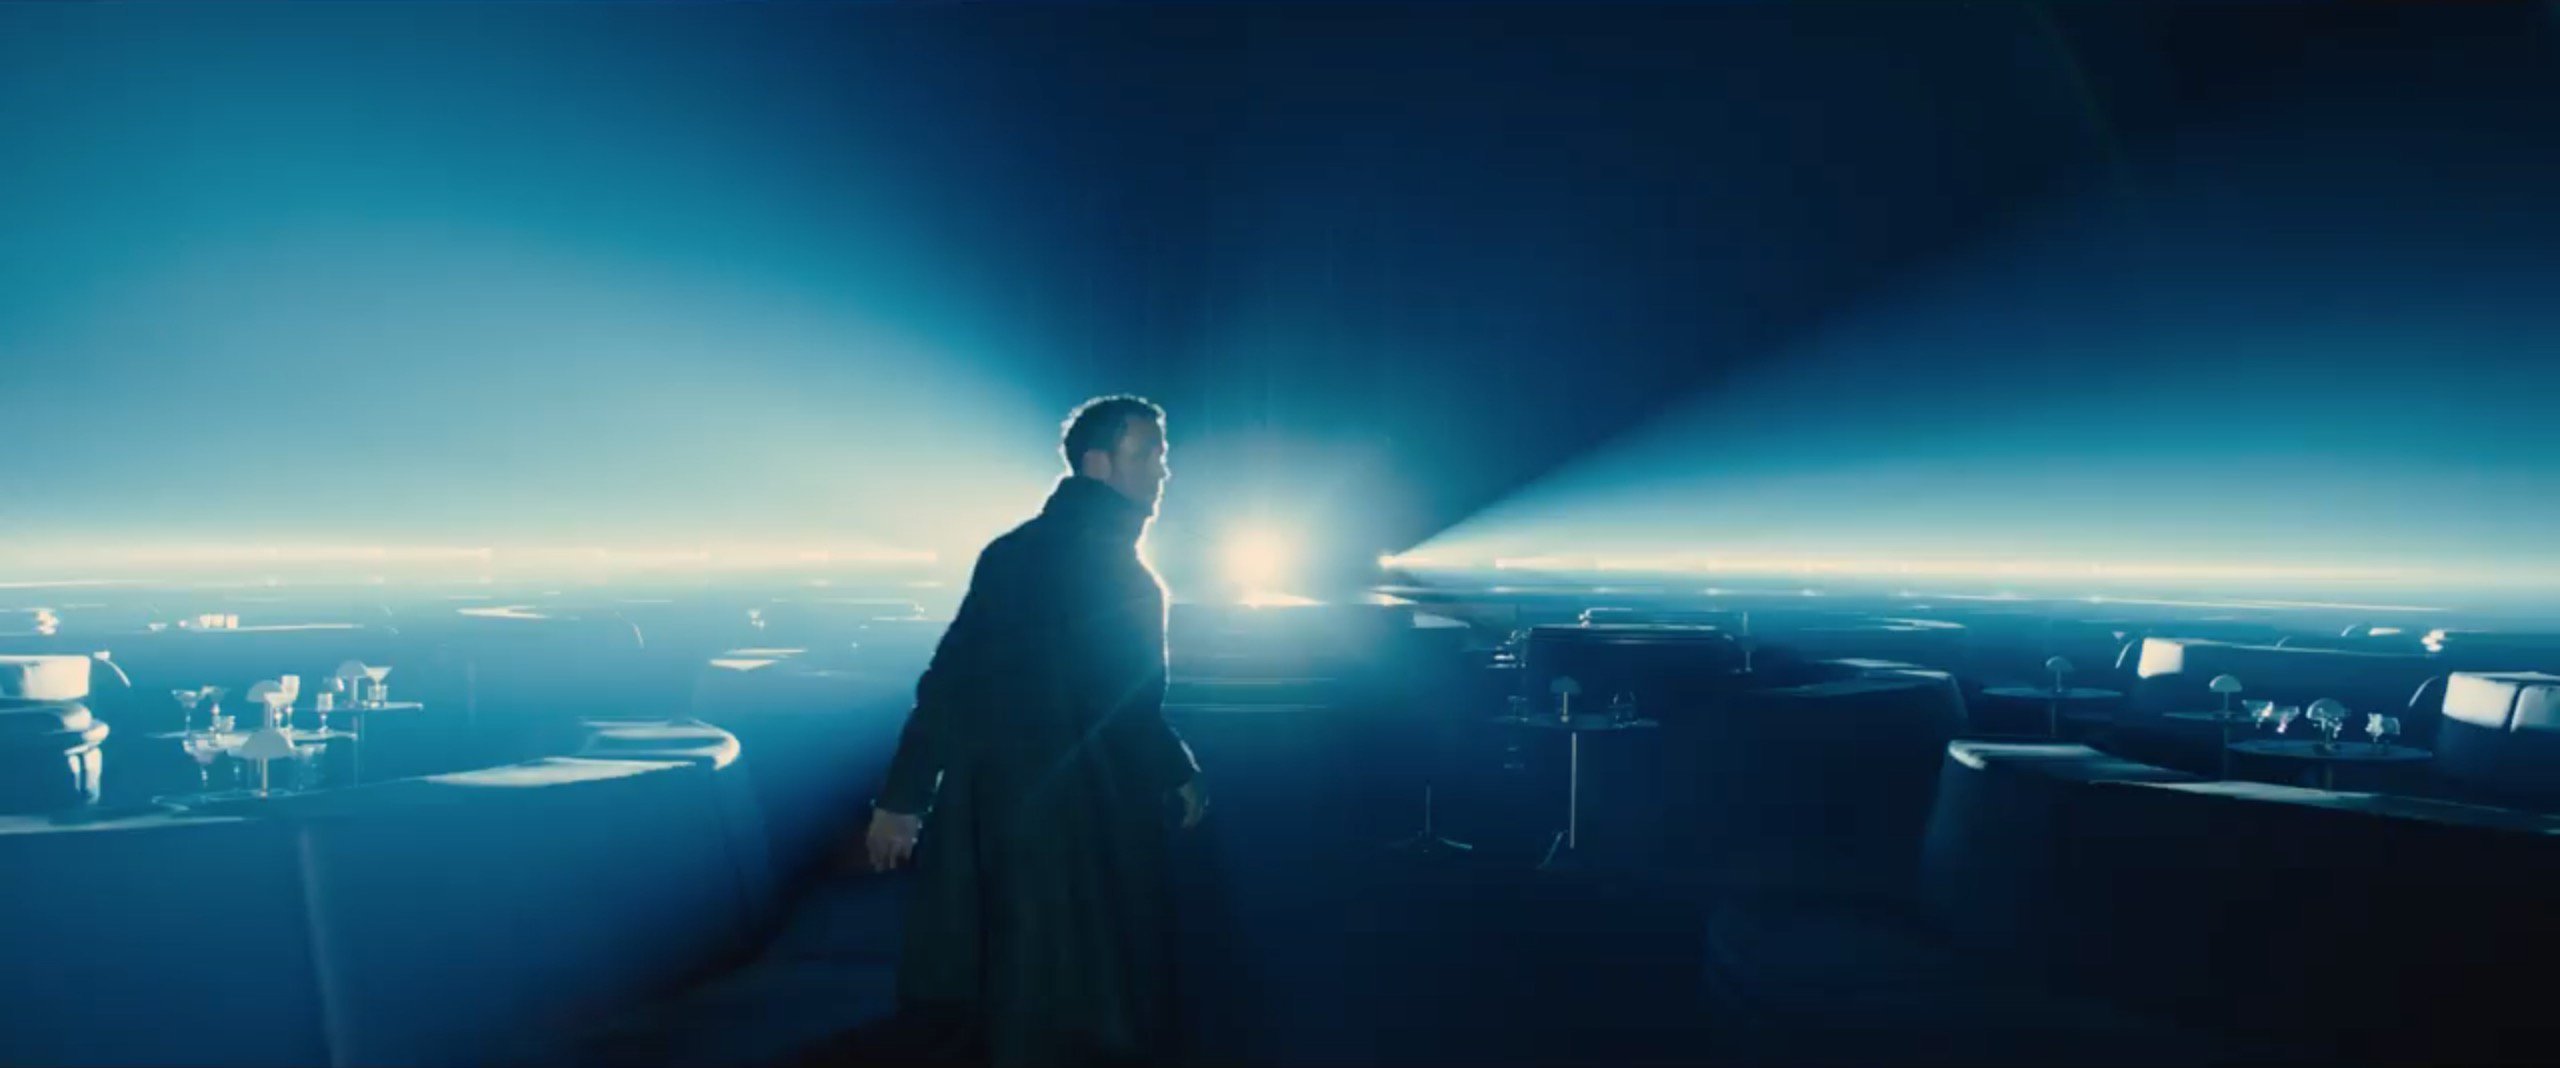 Blade-Runner-2049-trailer-breakdown-33